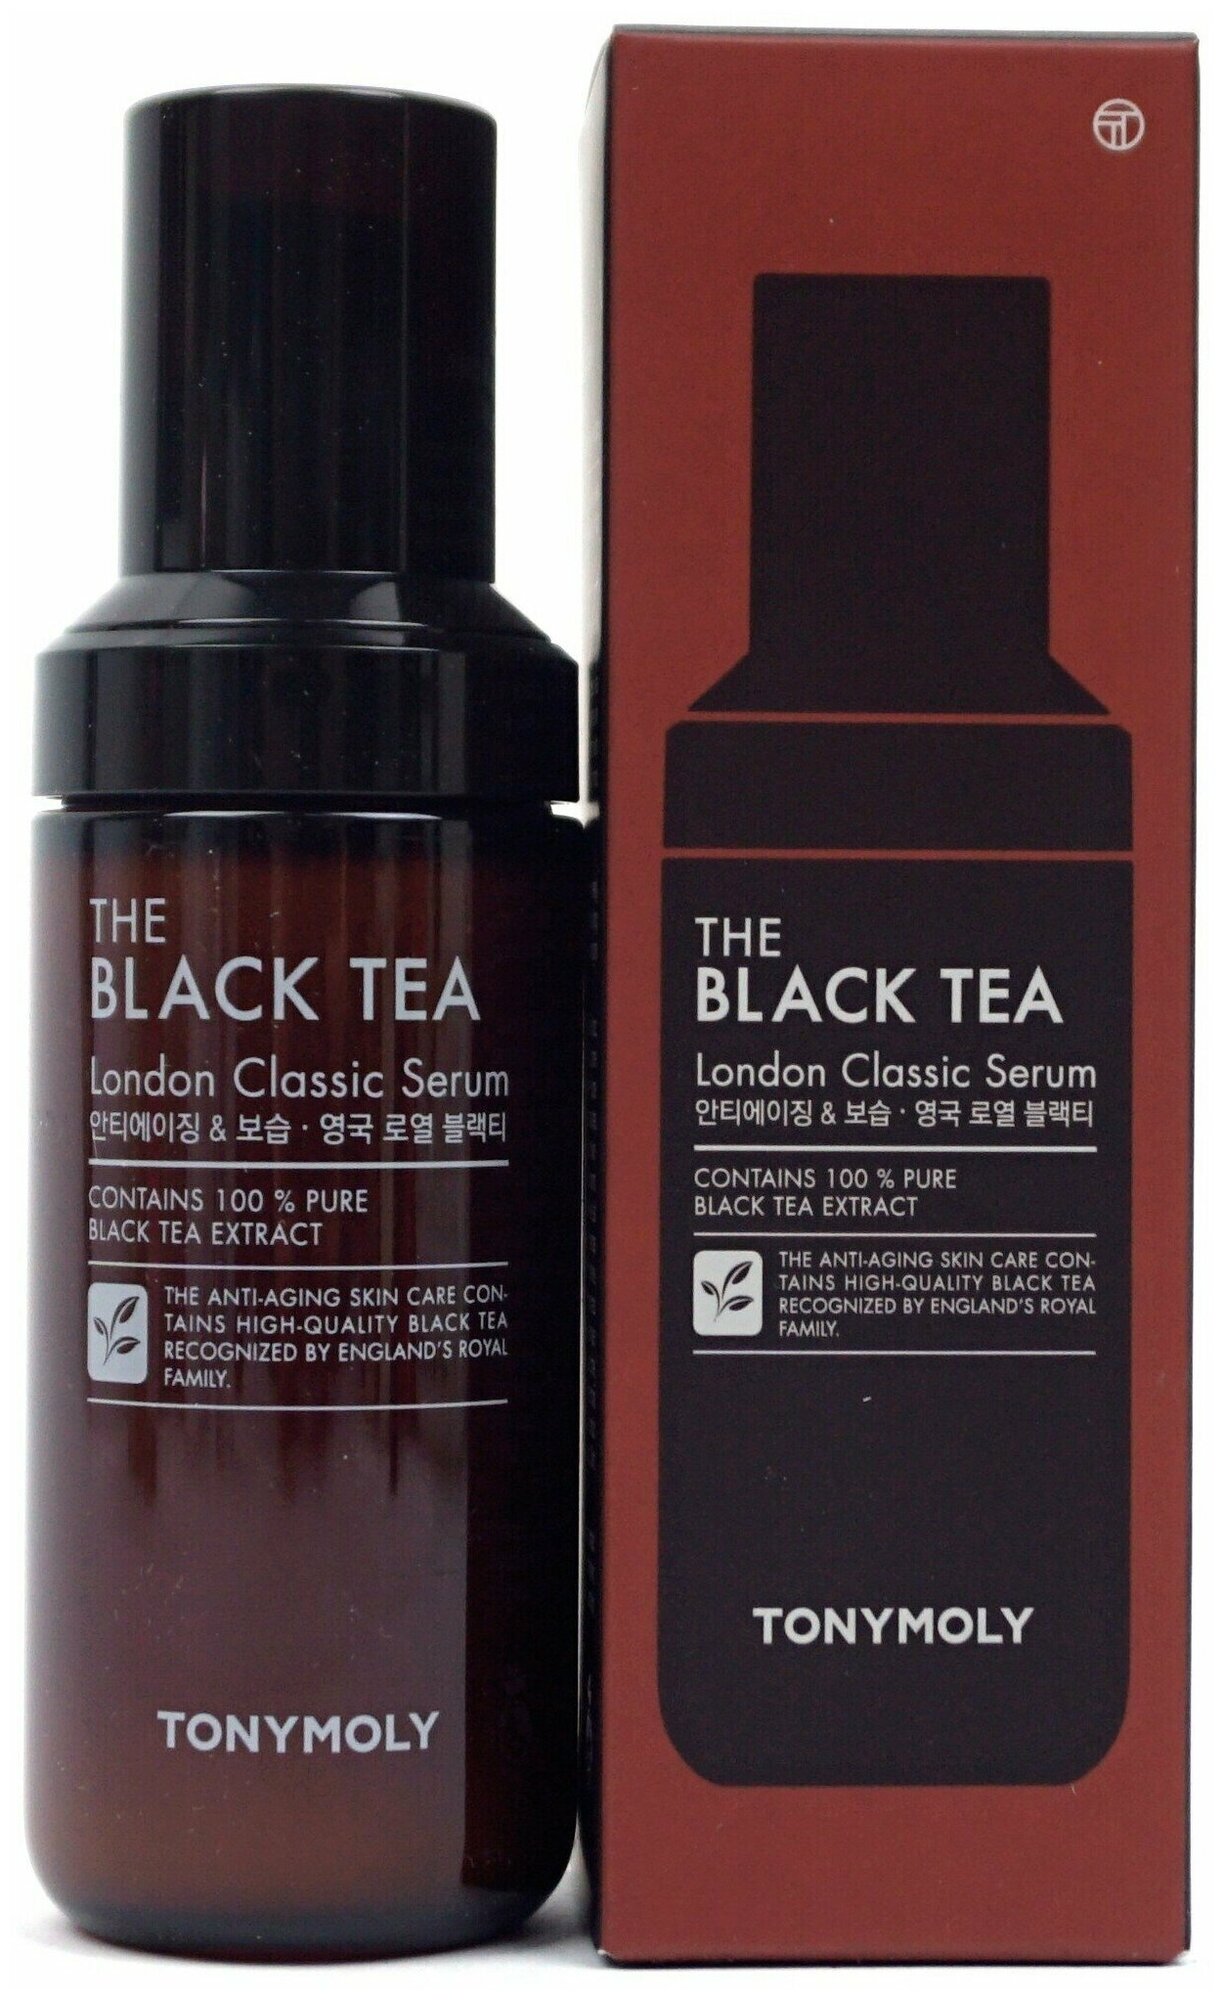 TONYMOLY Антивозрастная сыворотка для лица с экстрактом английского черного чая THE BLACK TEA London Classic Serum, 50мл - фото №4